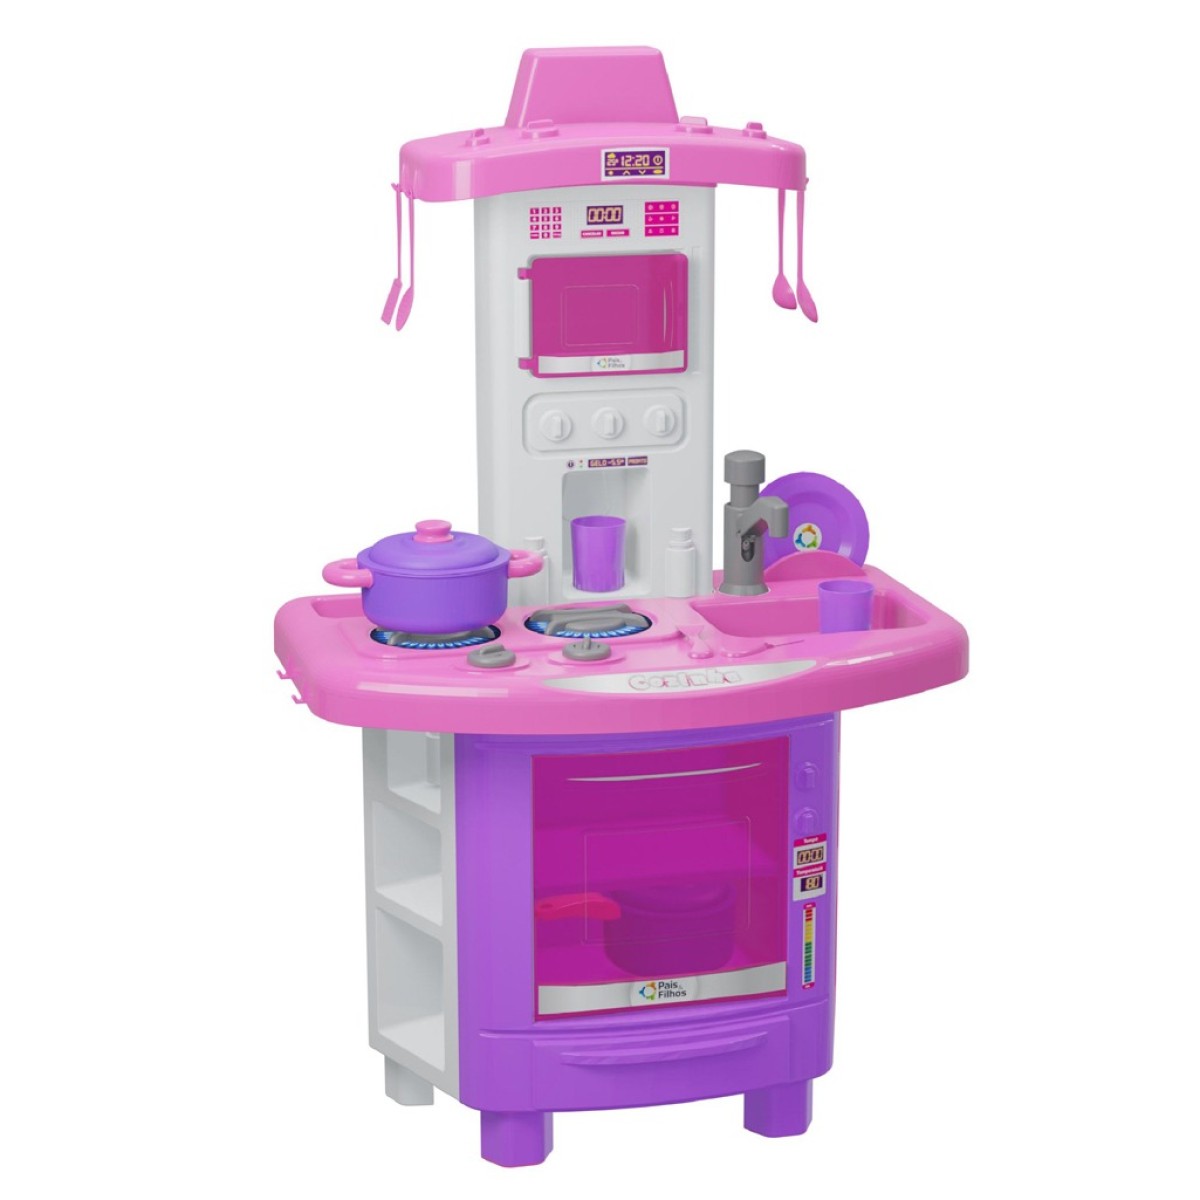 Brinquedo cozinha infantil com som e água de verdade-790347-26298